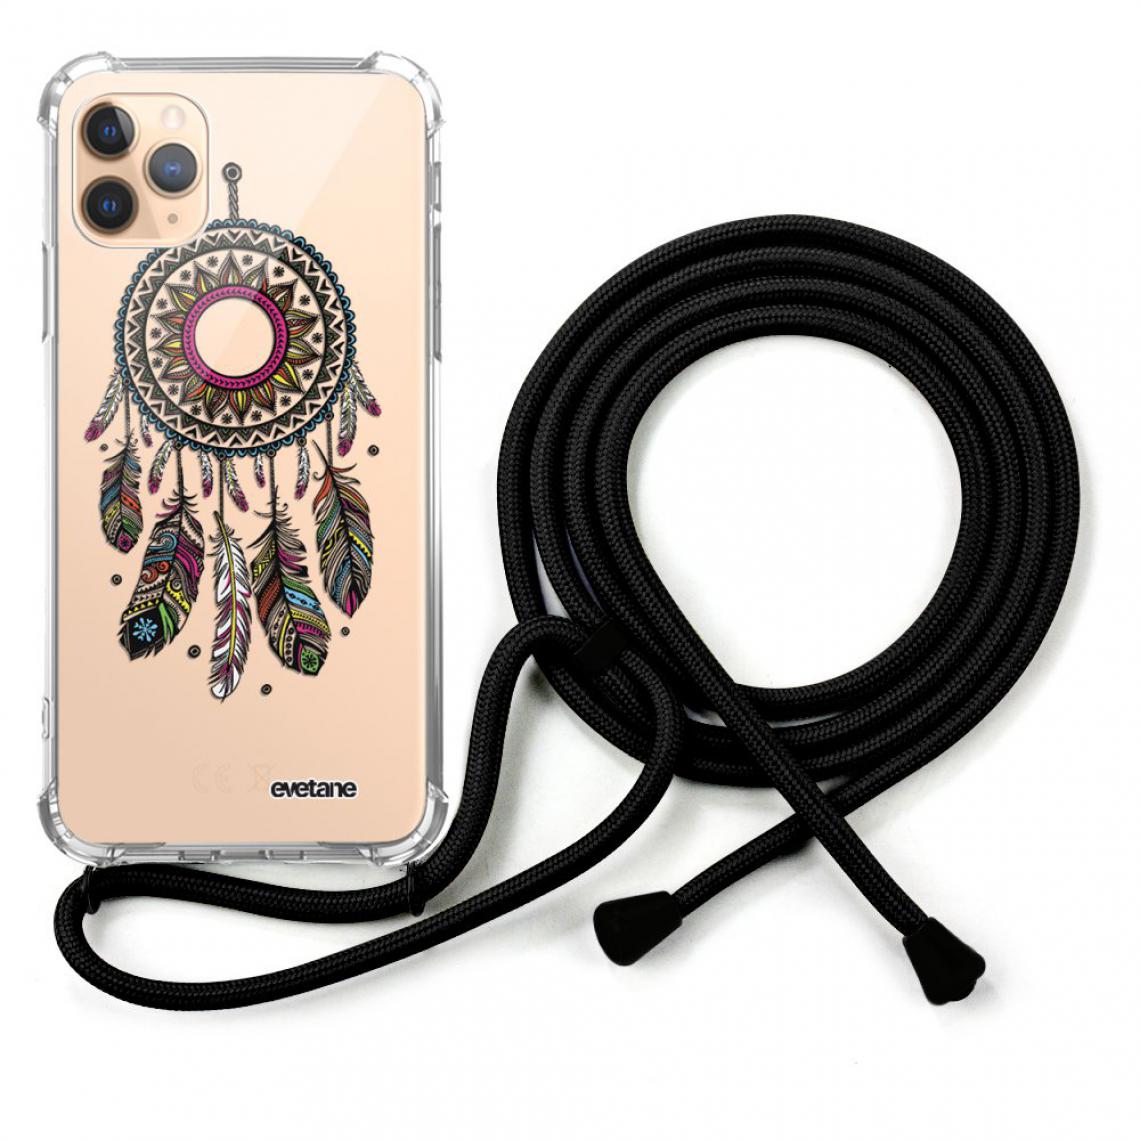 Evetane - Coque iPhone 11 Pro coque avec cordon transparente Attrape rêve - Coque, étui smartphone